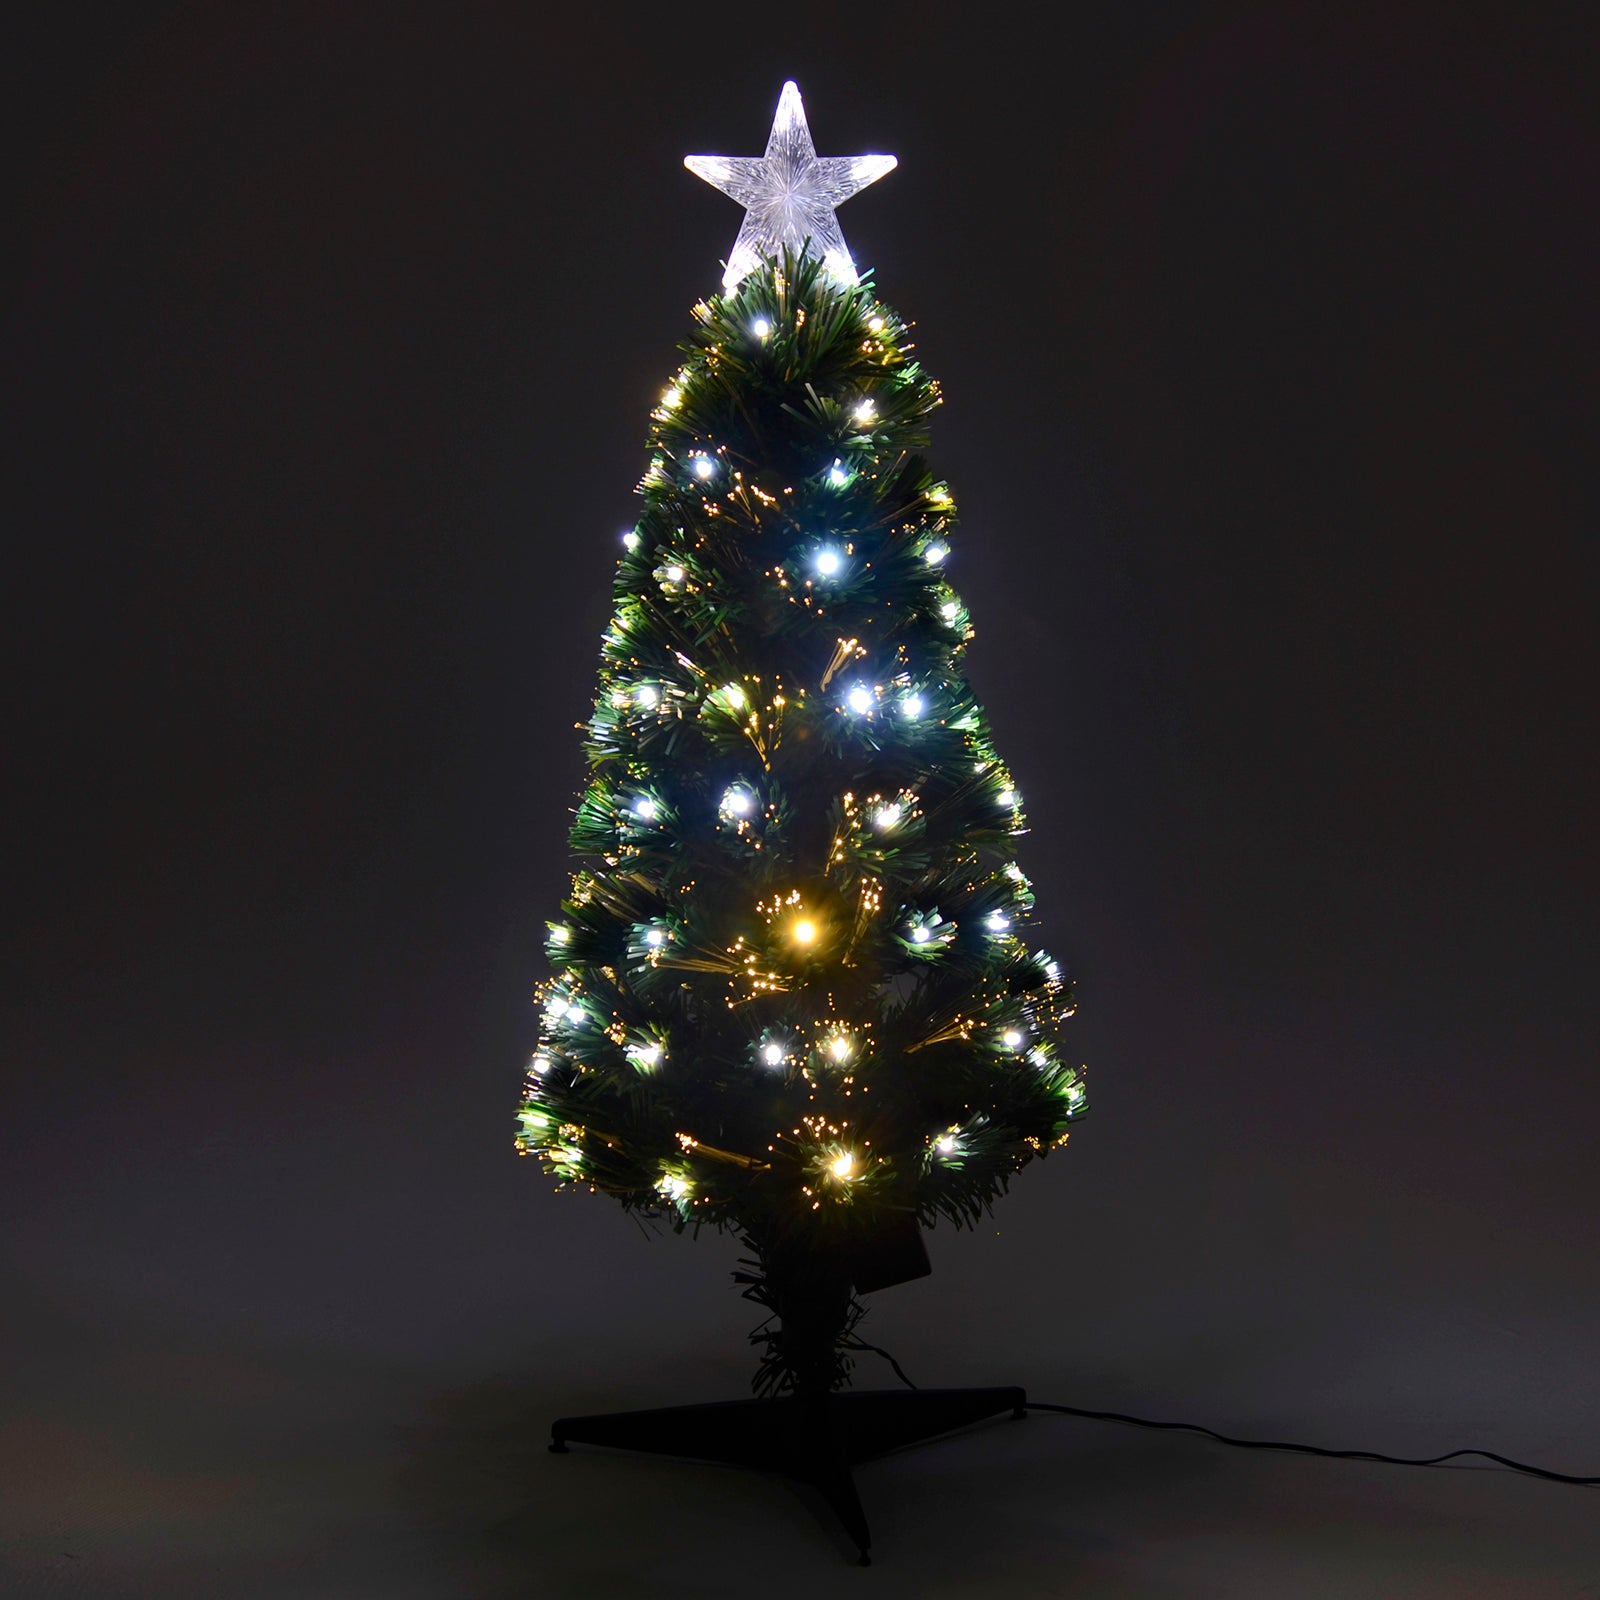 Mr Crimbo Green Pencil Christmas Tree Fibre Optic Lights - MrCrimbo.co.uk -XS5810 - 80cm -6ft christmas tree